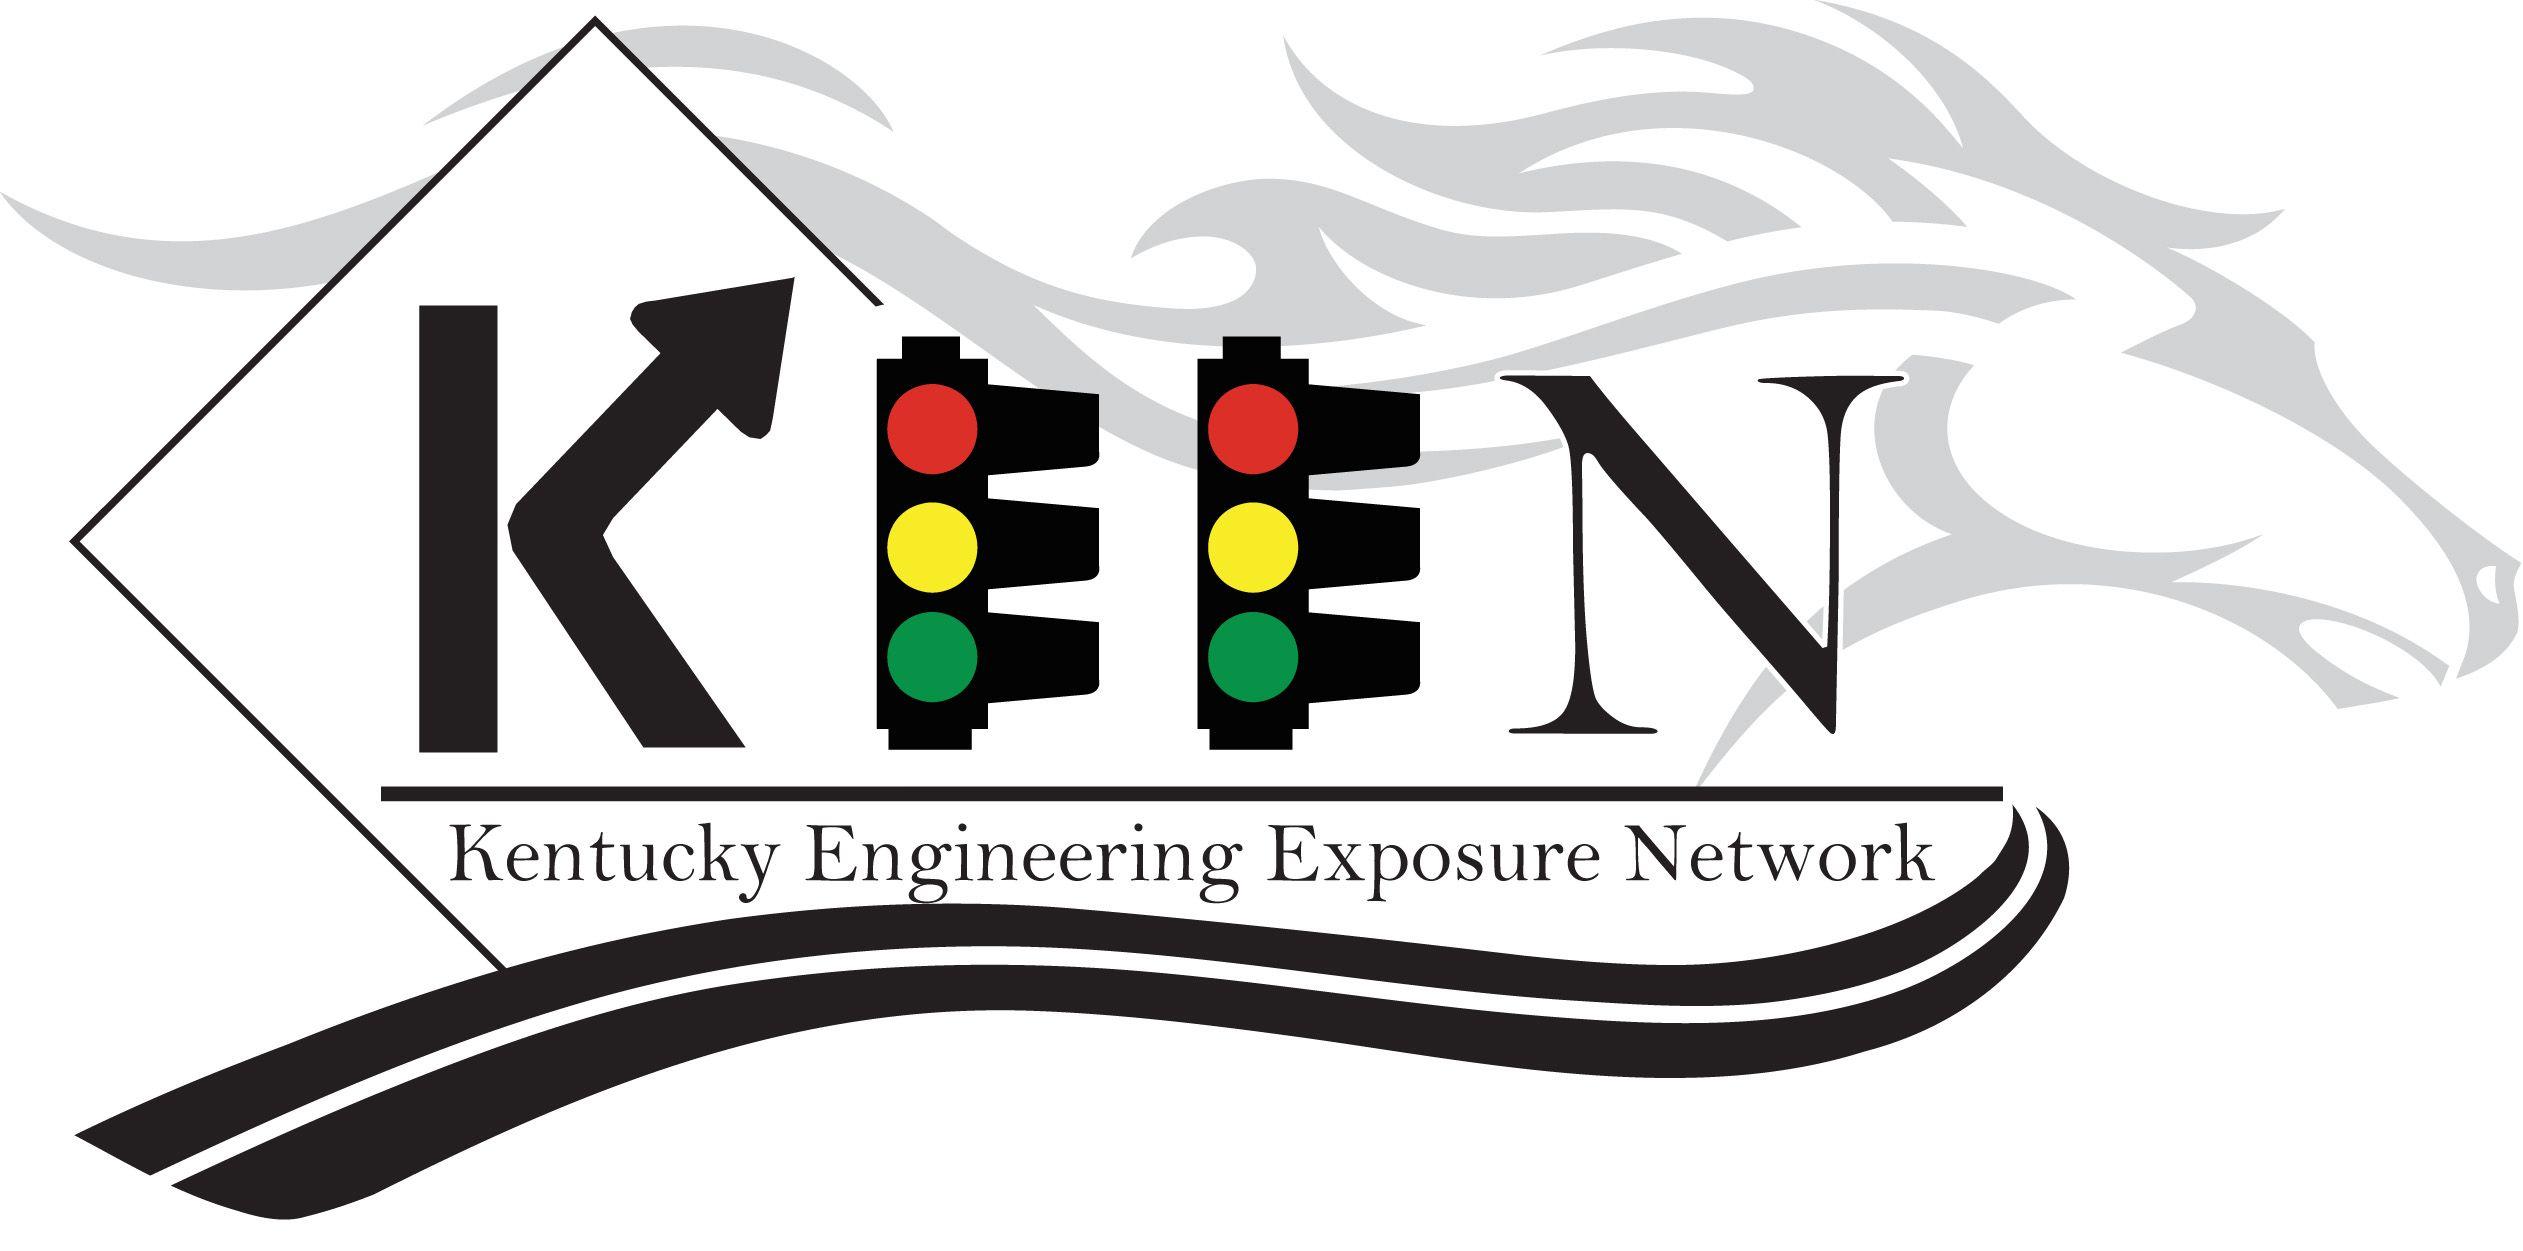 Keen Logo - KEEN